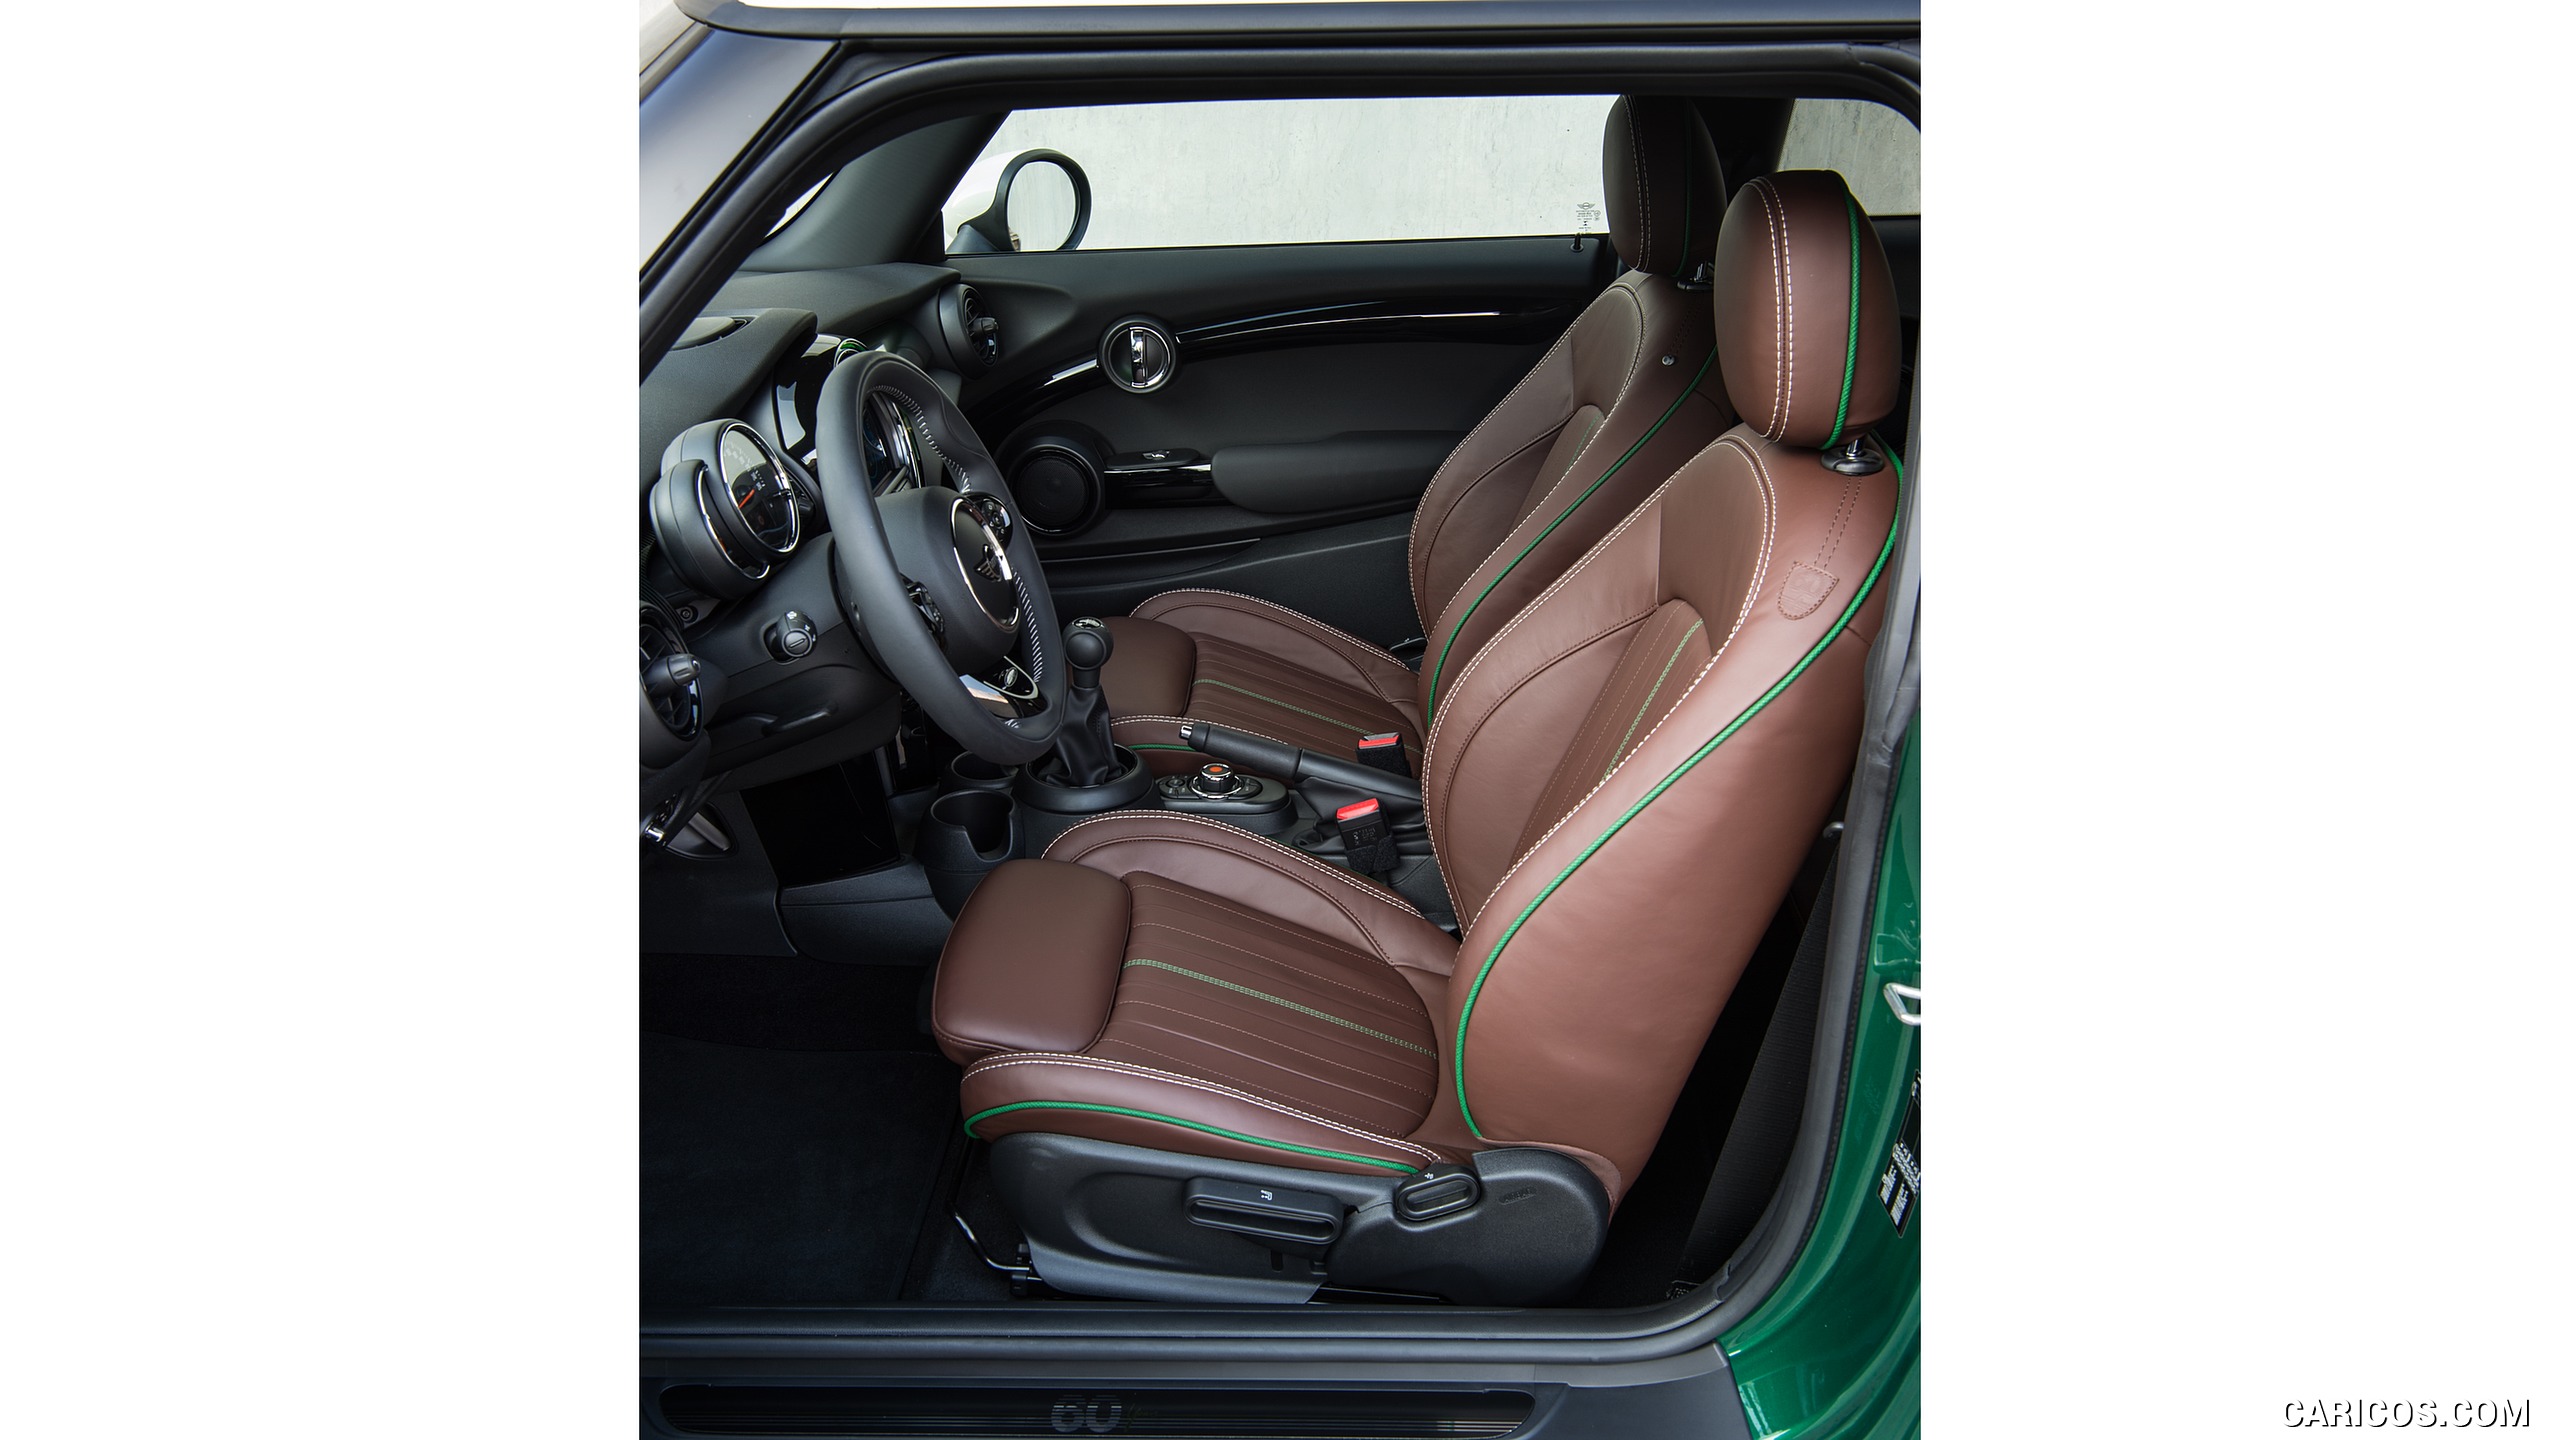 2019 MINI Cooper 3-Door 60 Years Edition - Interior, Front Seats, #87 of 102